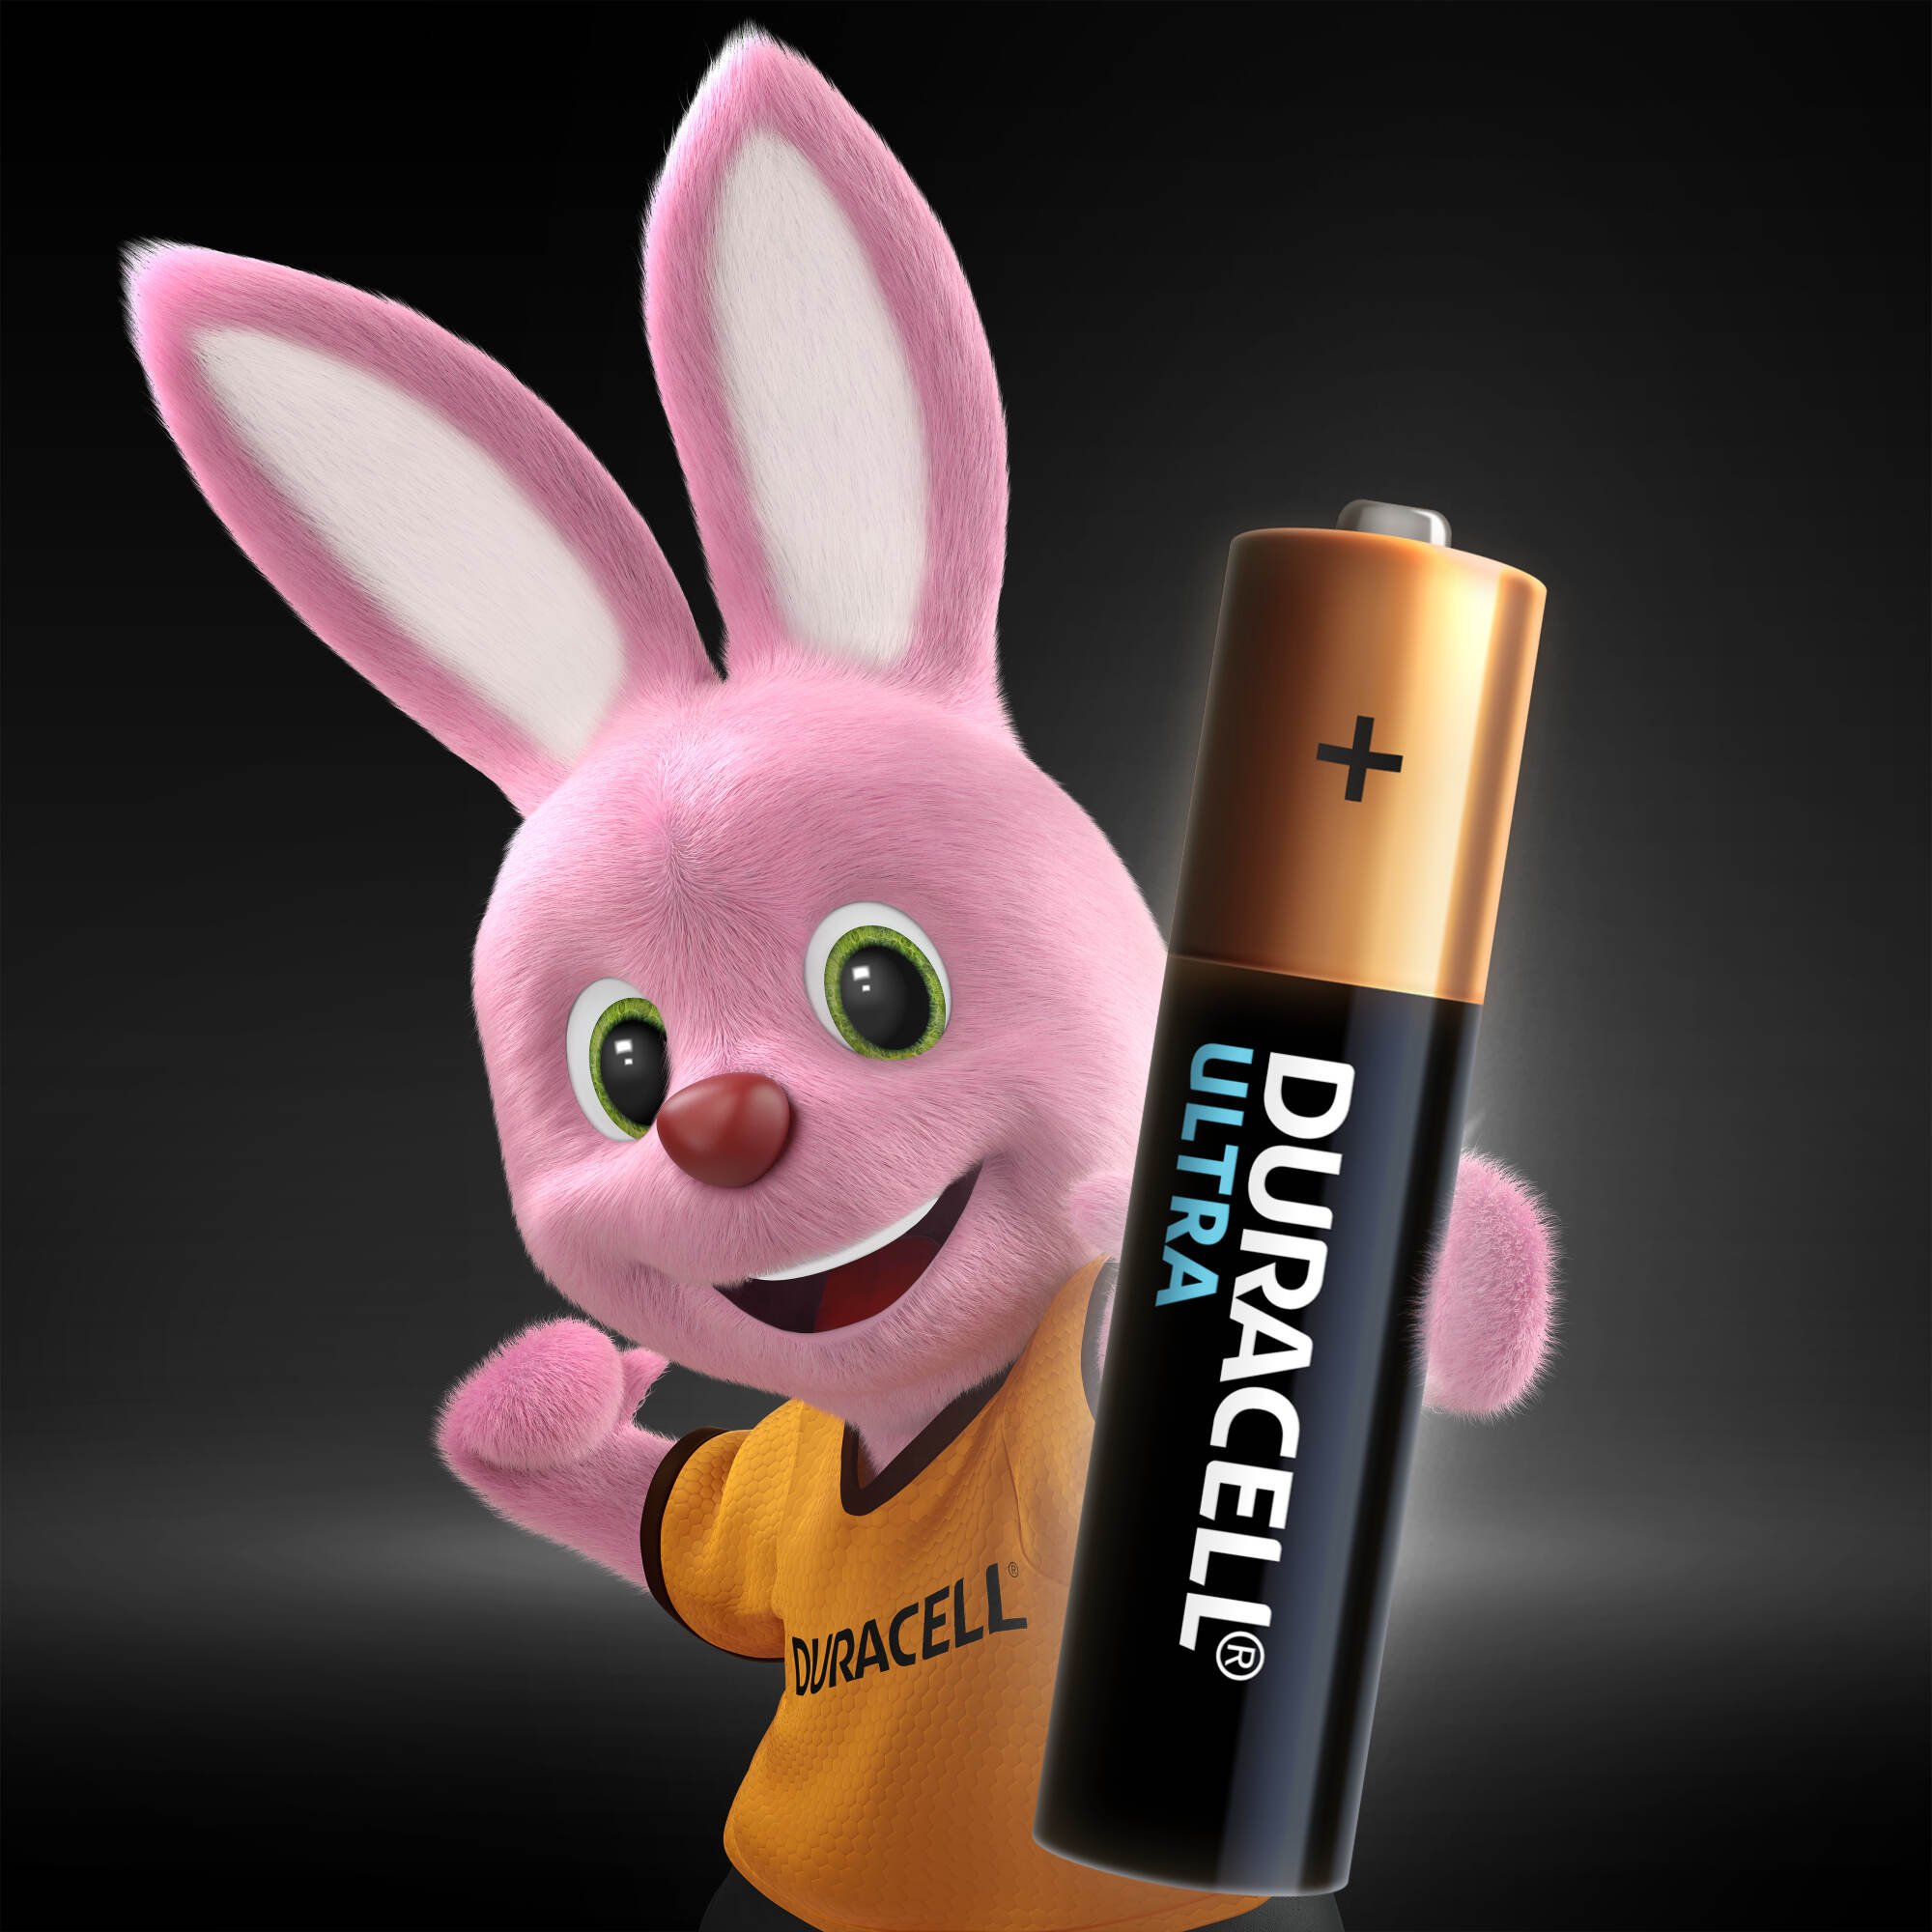 Лужні батарейки мізинчикові Duracell Ultra 1,5 V AAA LR03/MX2400, 4 шт. (5004806) - фото 3